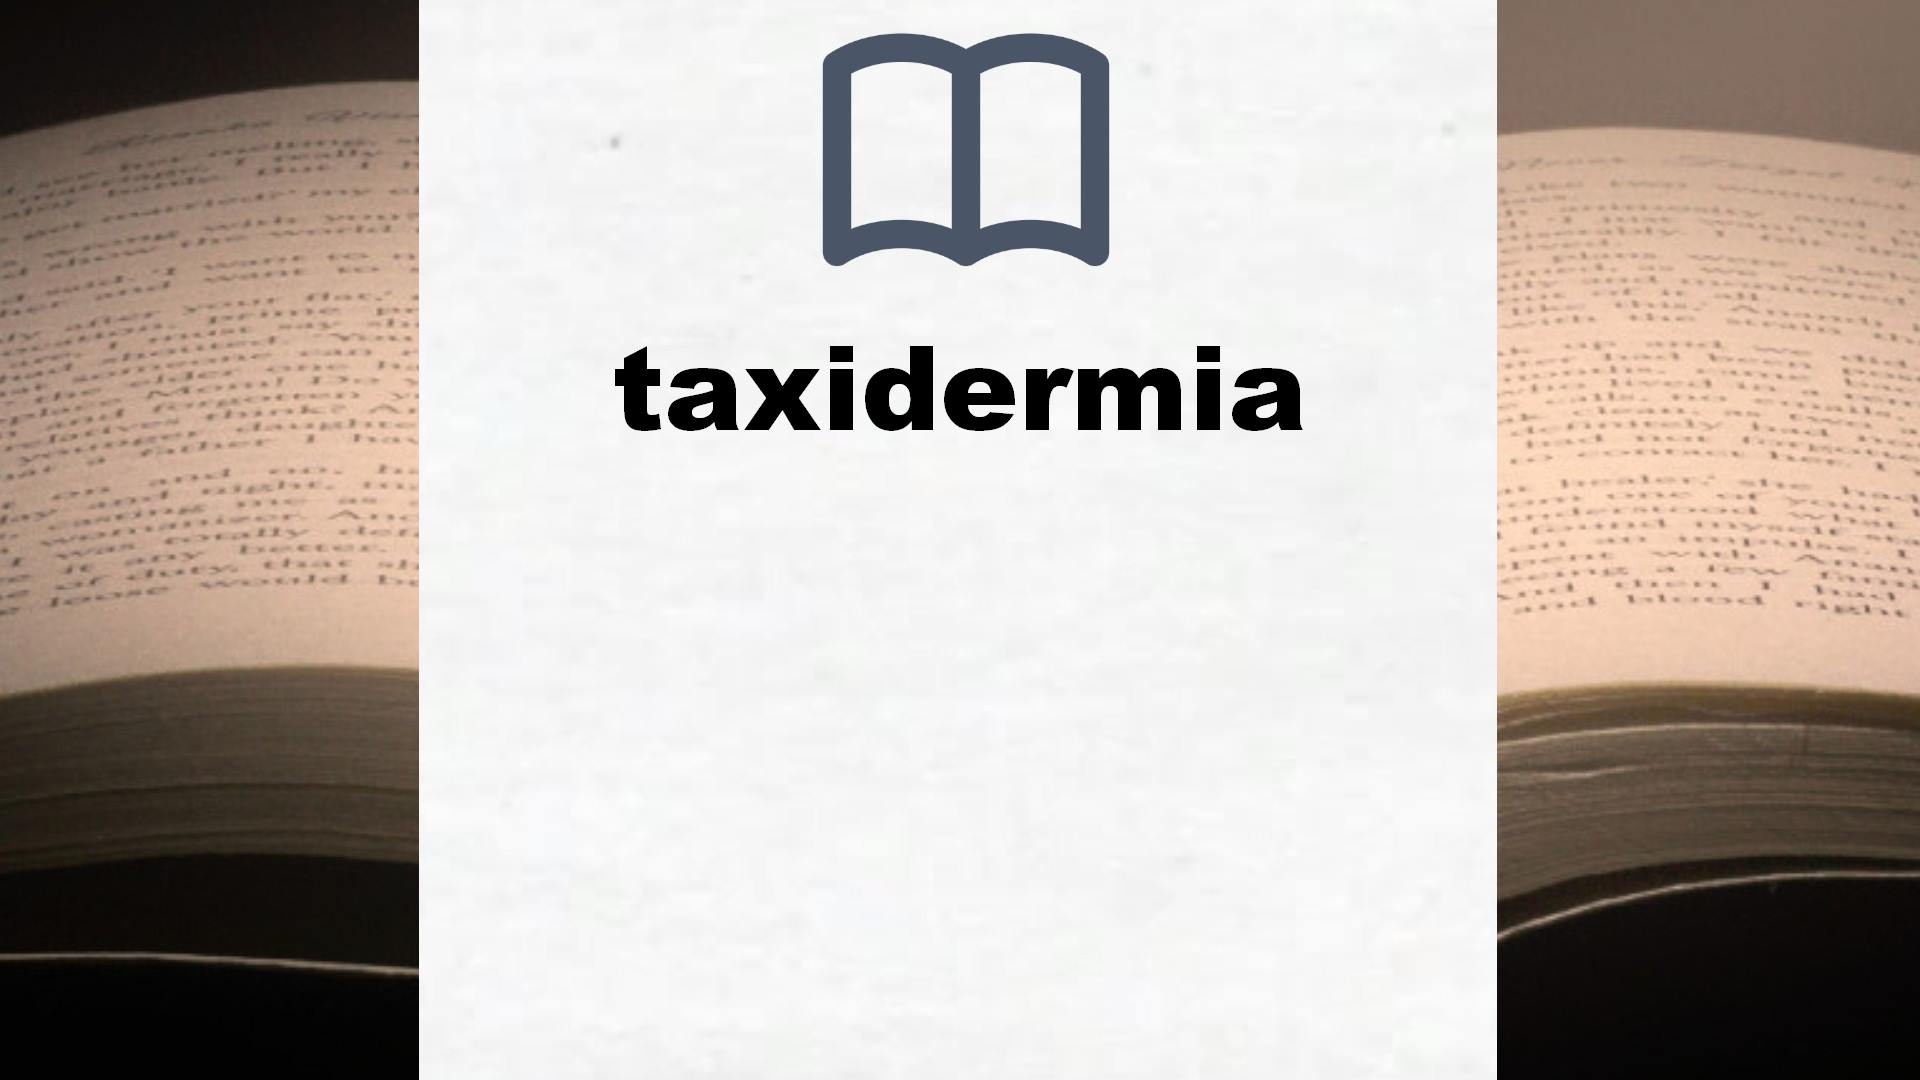 Libros sobre taxidermia